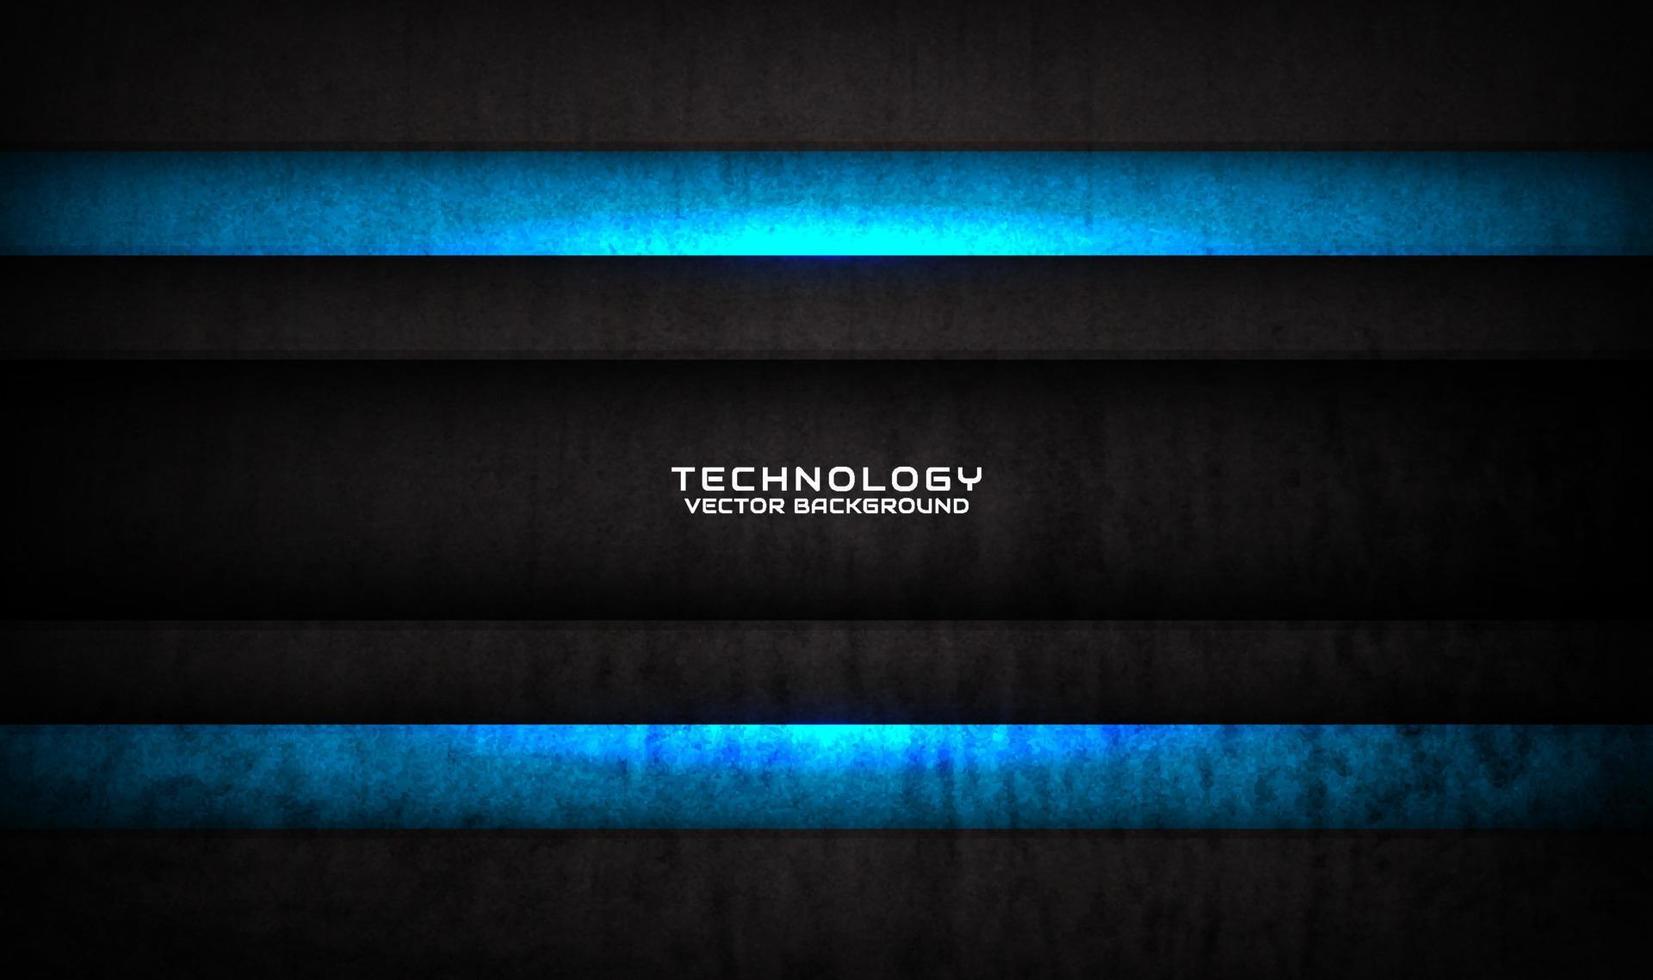 3D svart blå teknologi abstrakt bakgrund överlappande lager på mörkt utrymme med grunge textur effekt dekoration. grafiskt designelement framtida stilkoncept för banner, flygblad, omslag eller målsida vektor